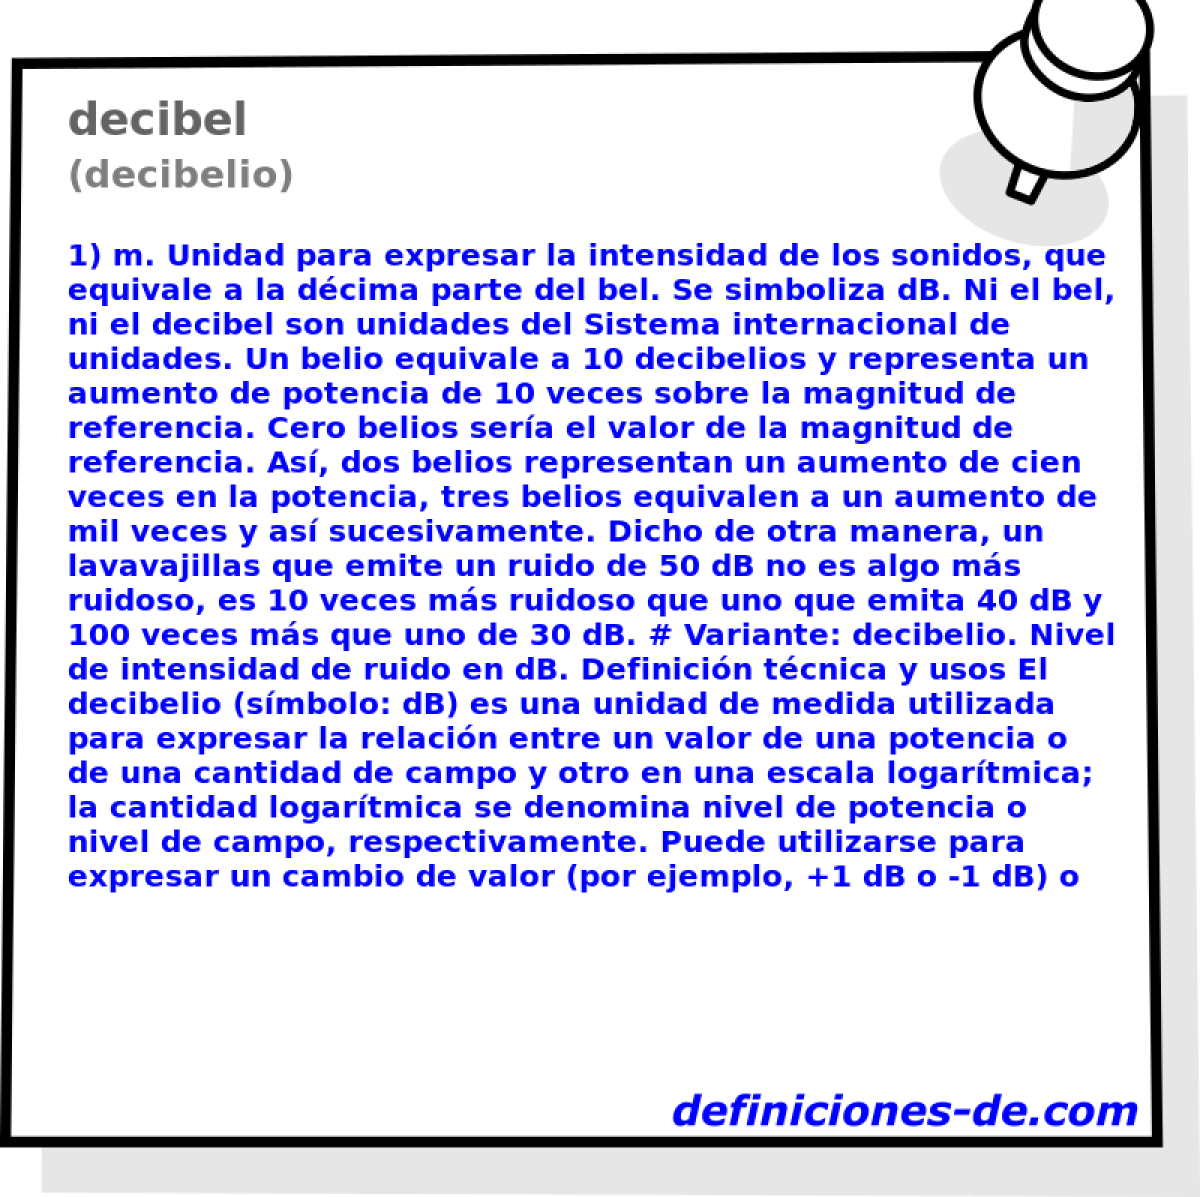 decibel (decibelio)